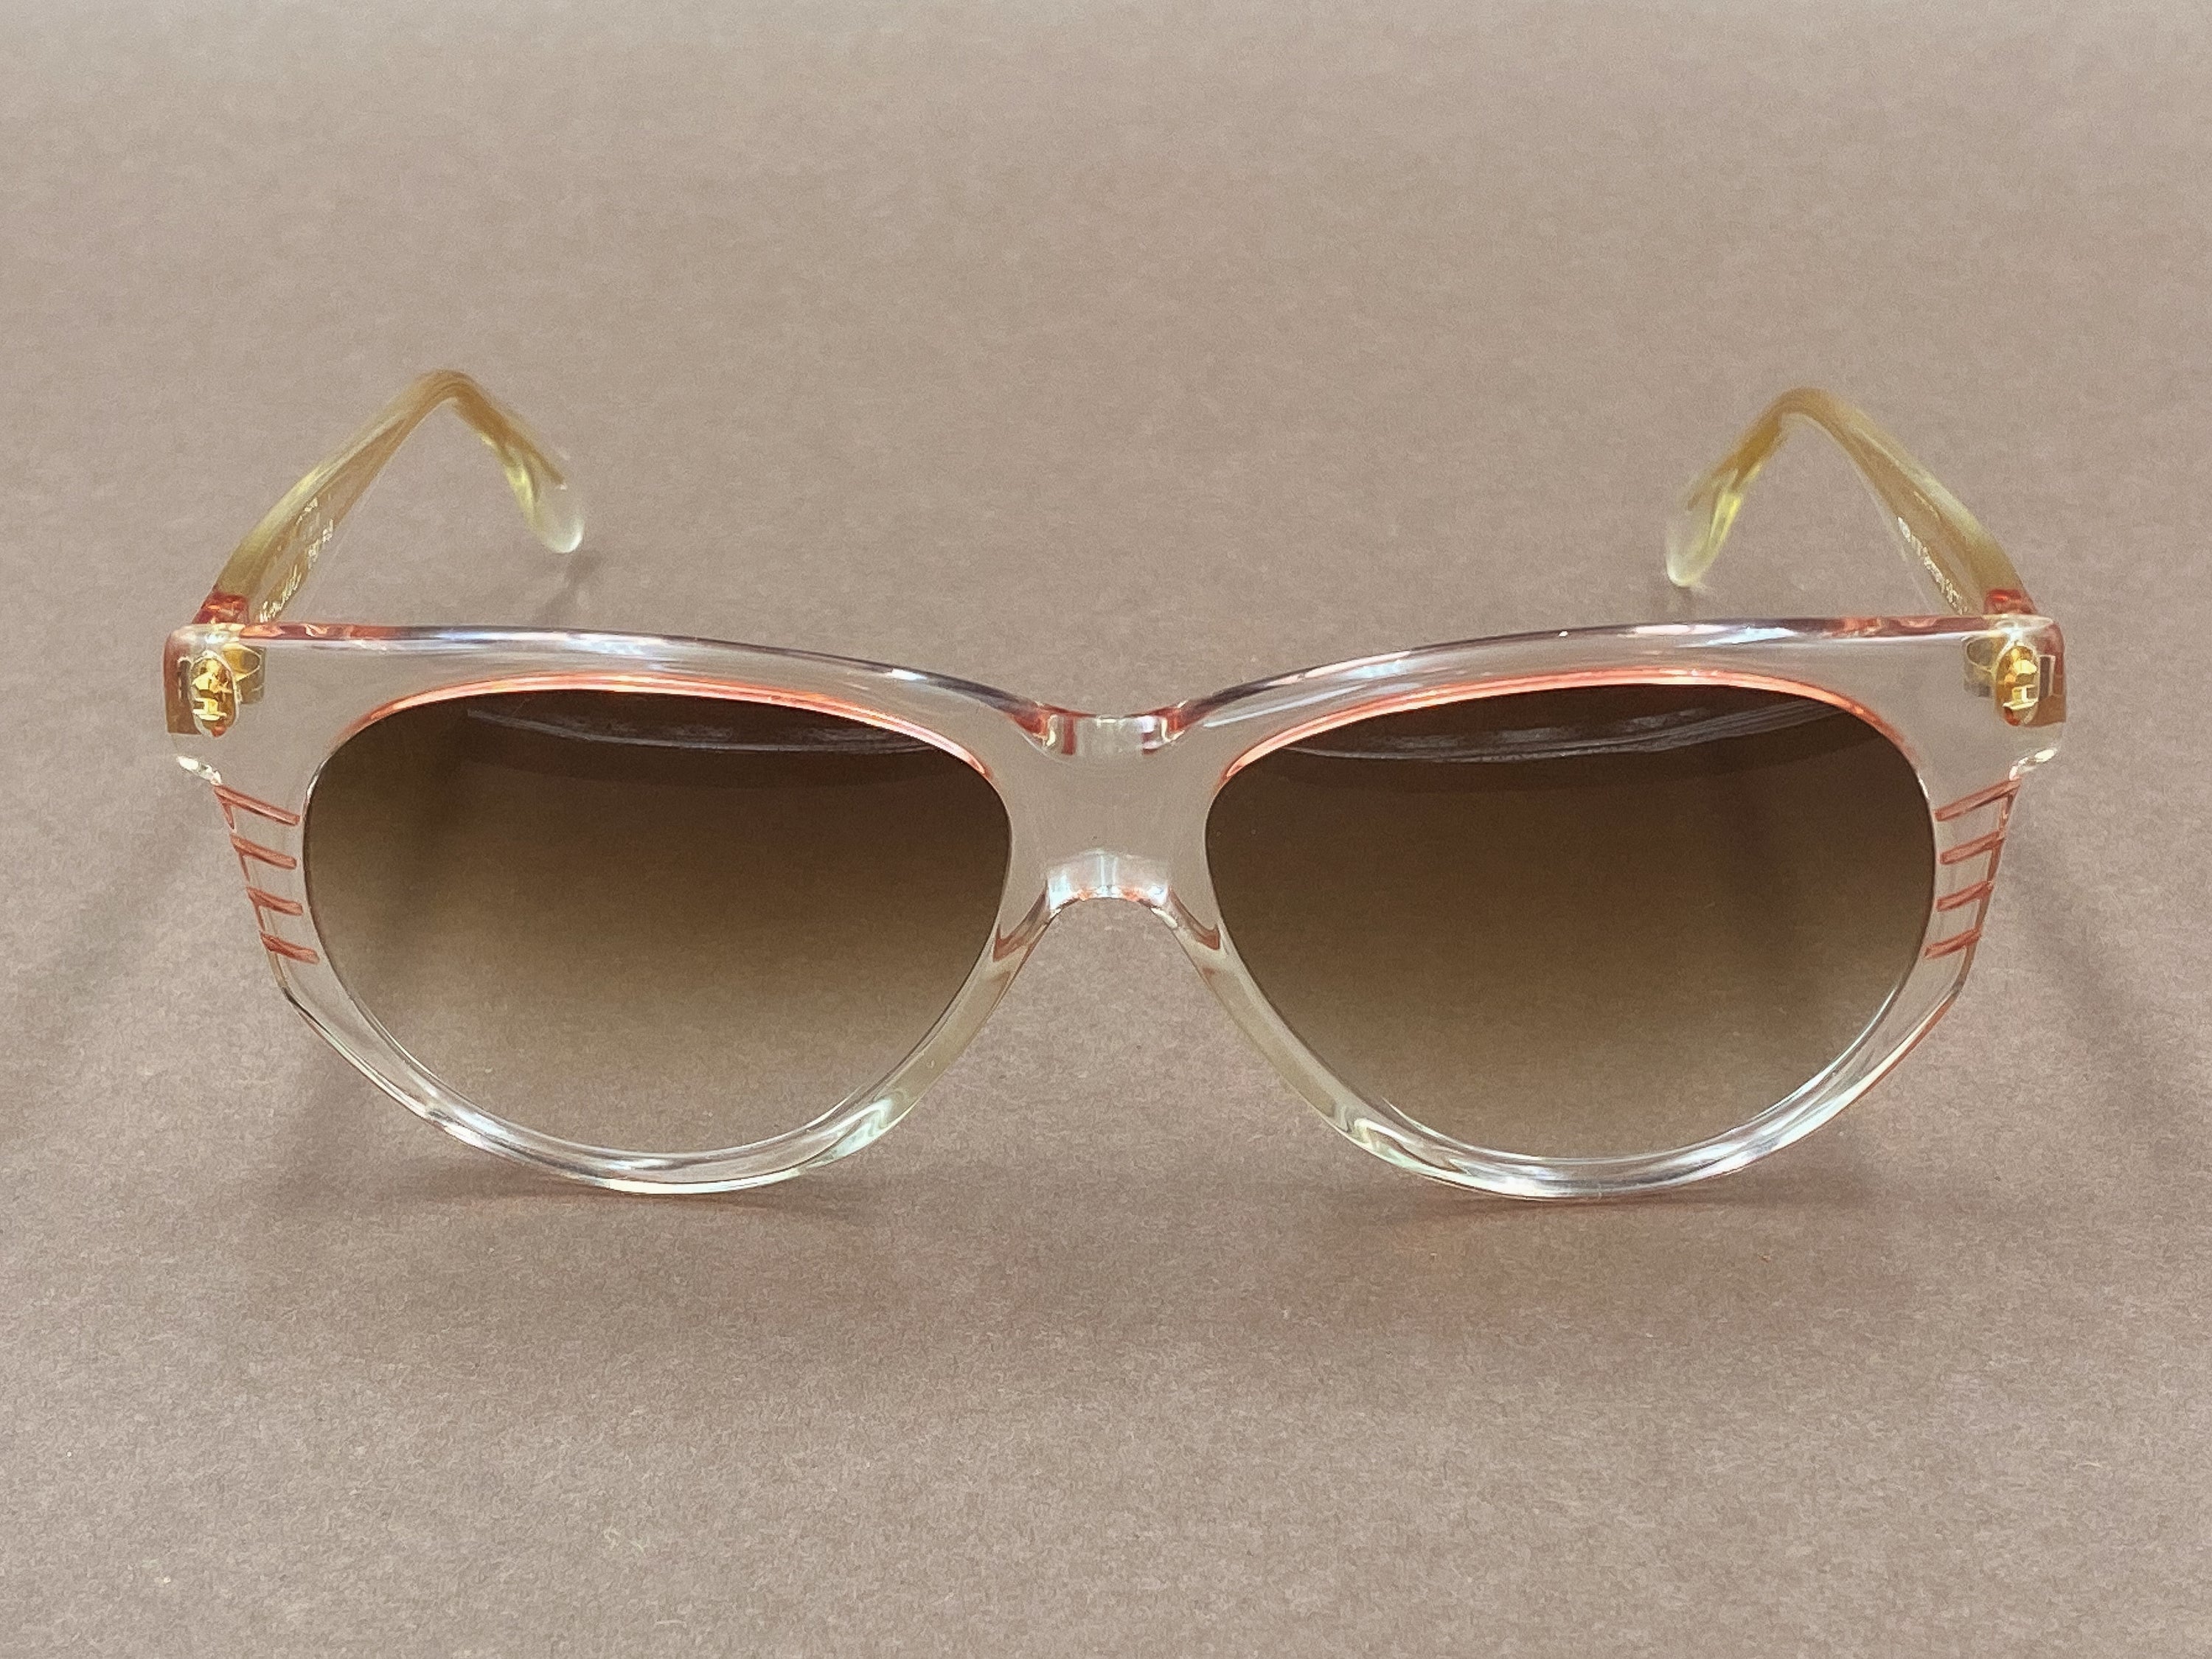 Brendel D92 F49 ladies sunglasses